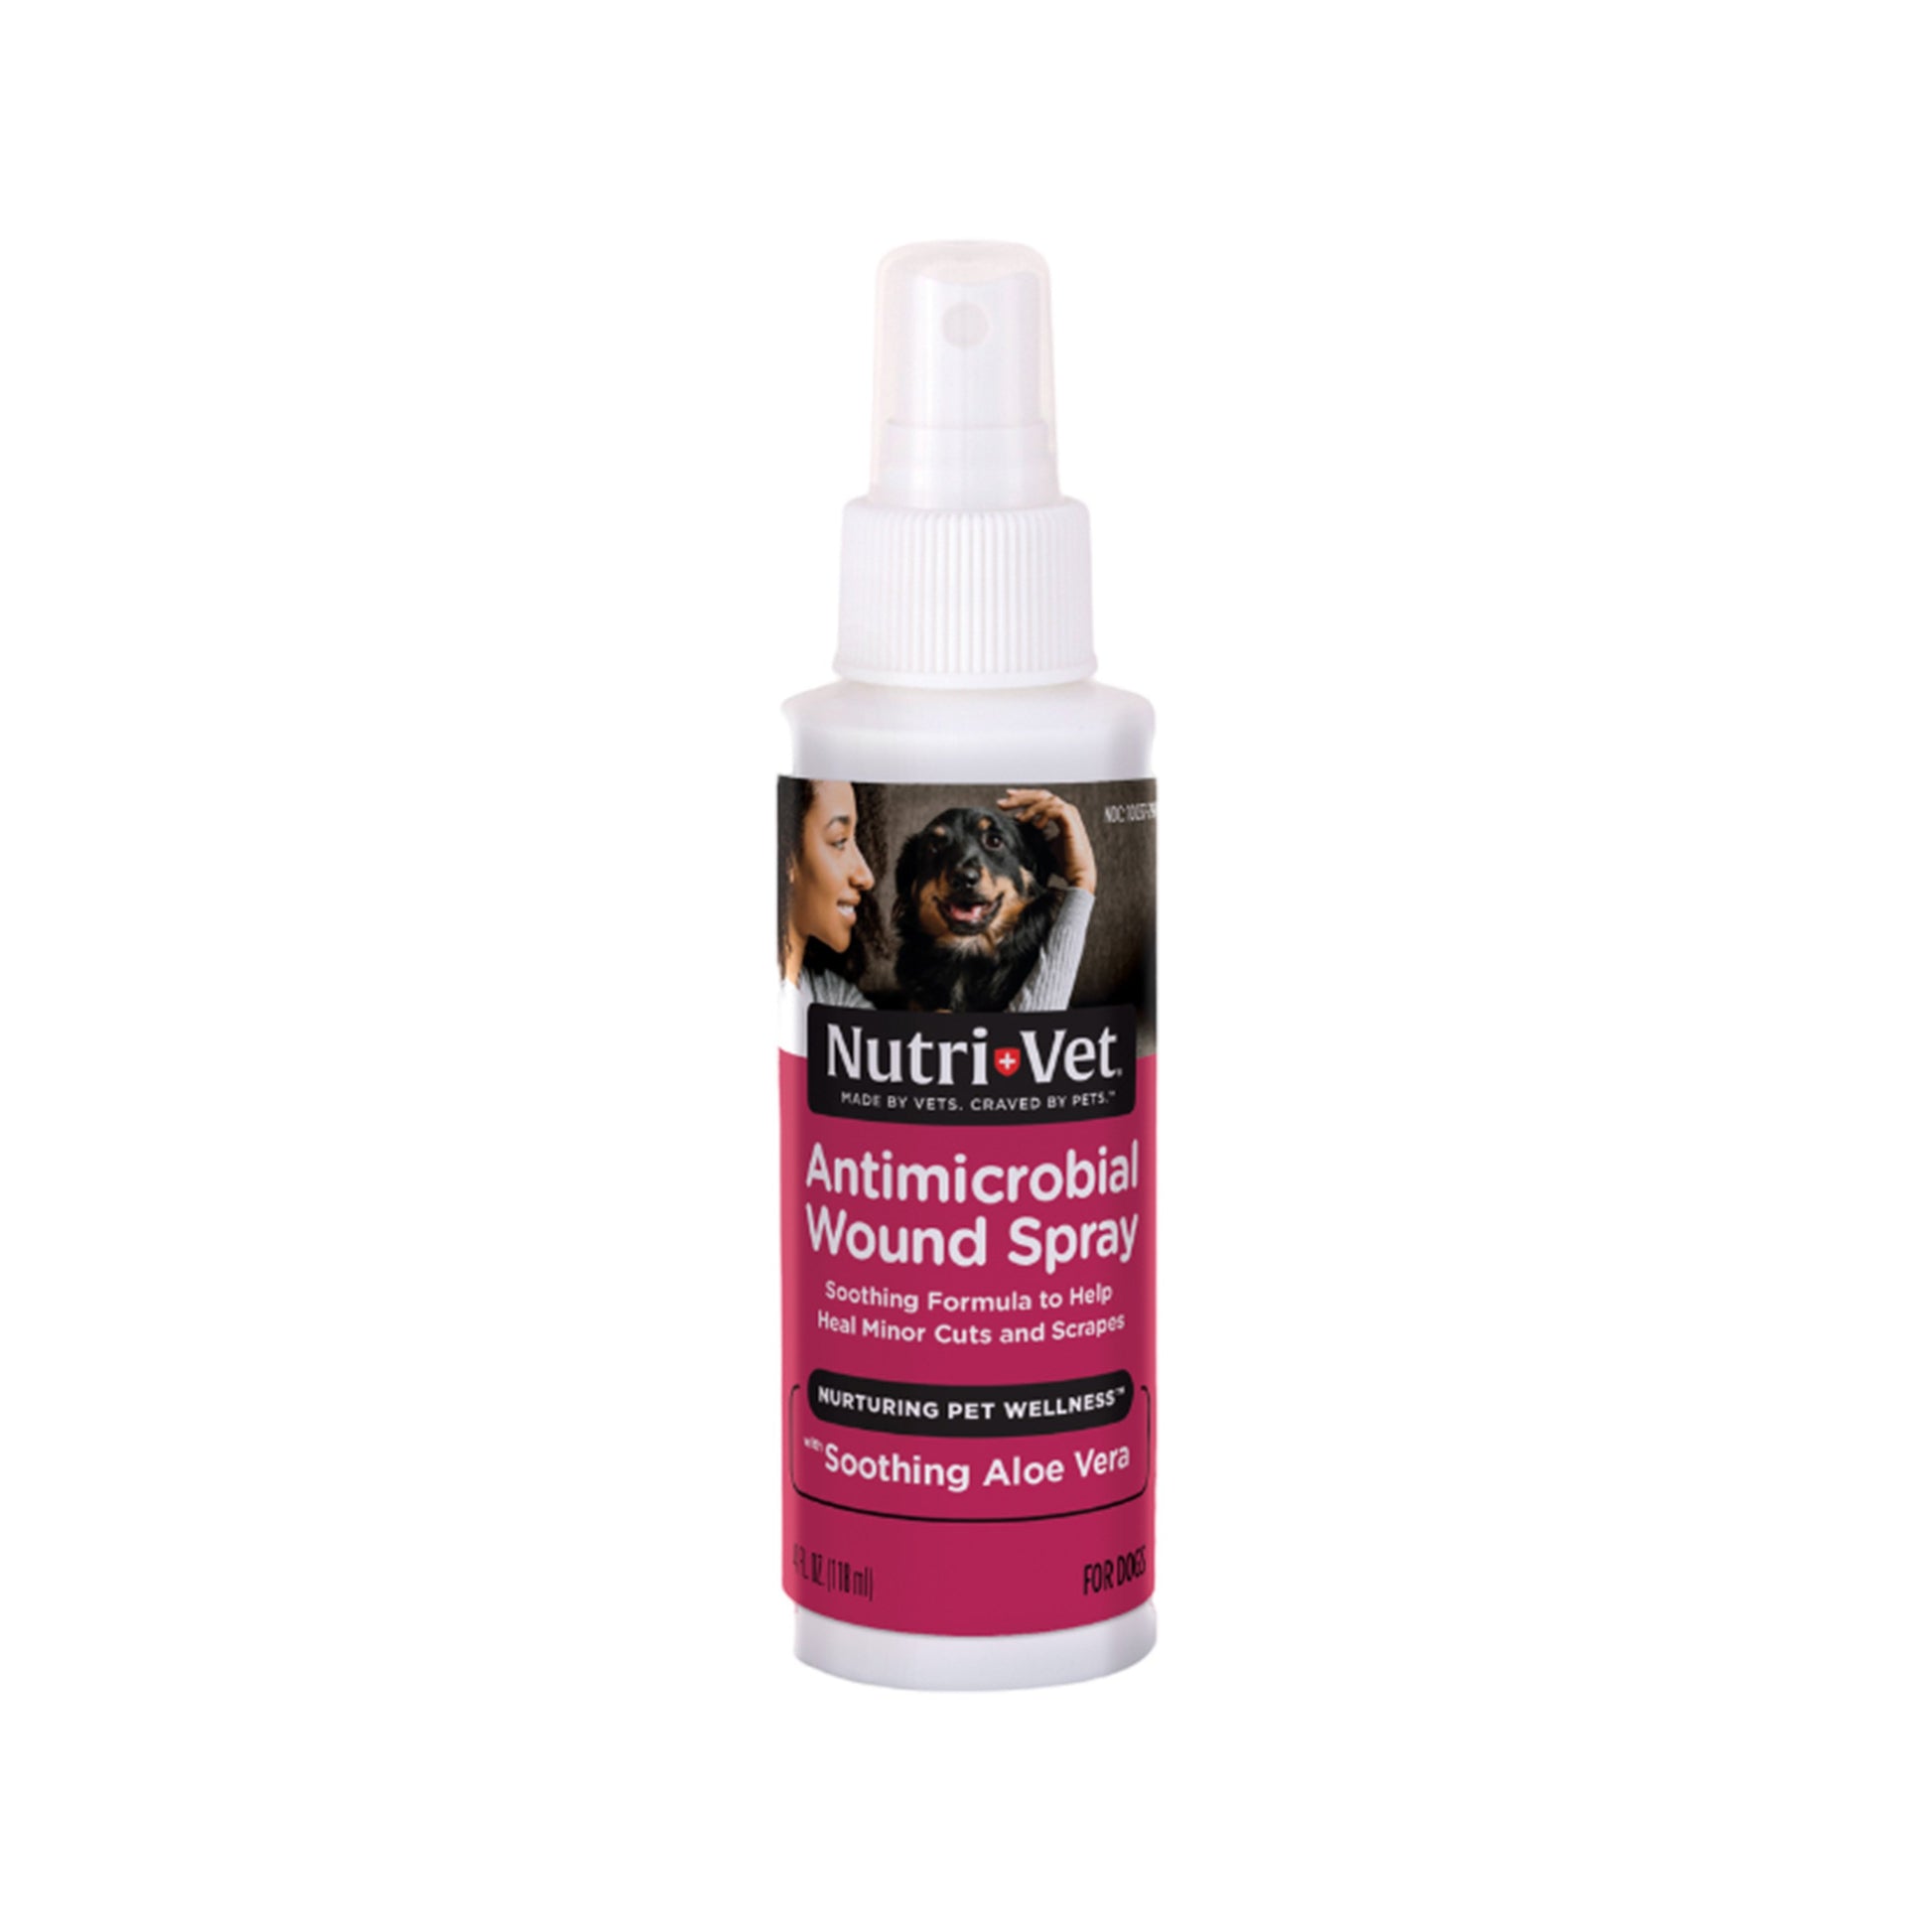 Nutri-Vet Antimicrobial Wound Spray for Dogs, 4oz, Nutri-Vet